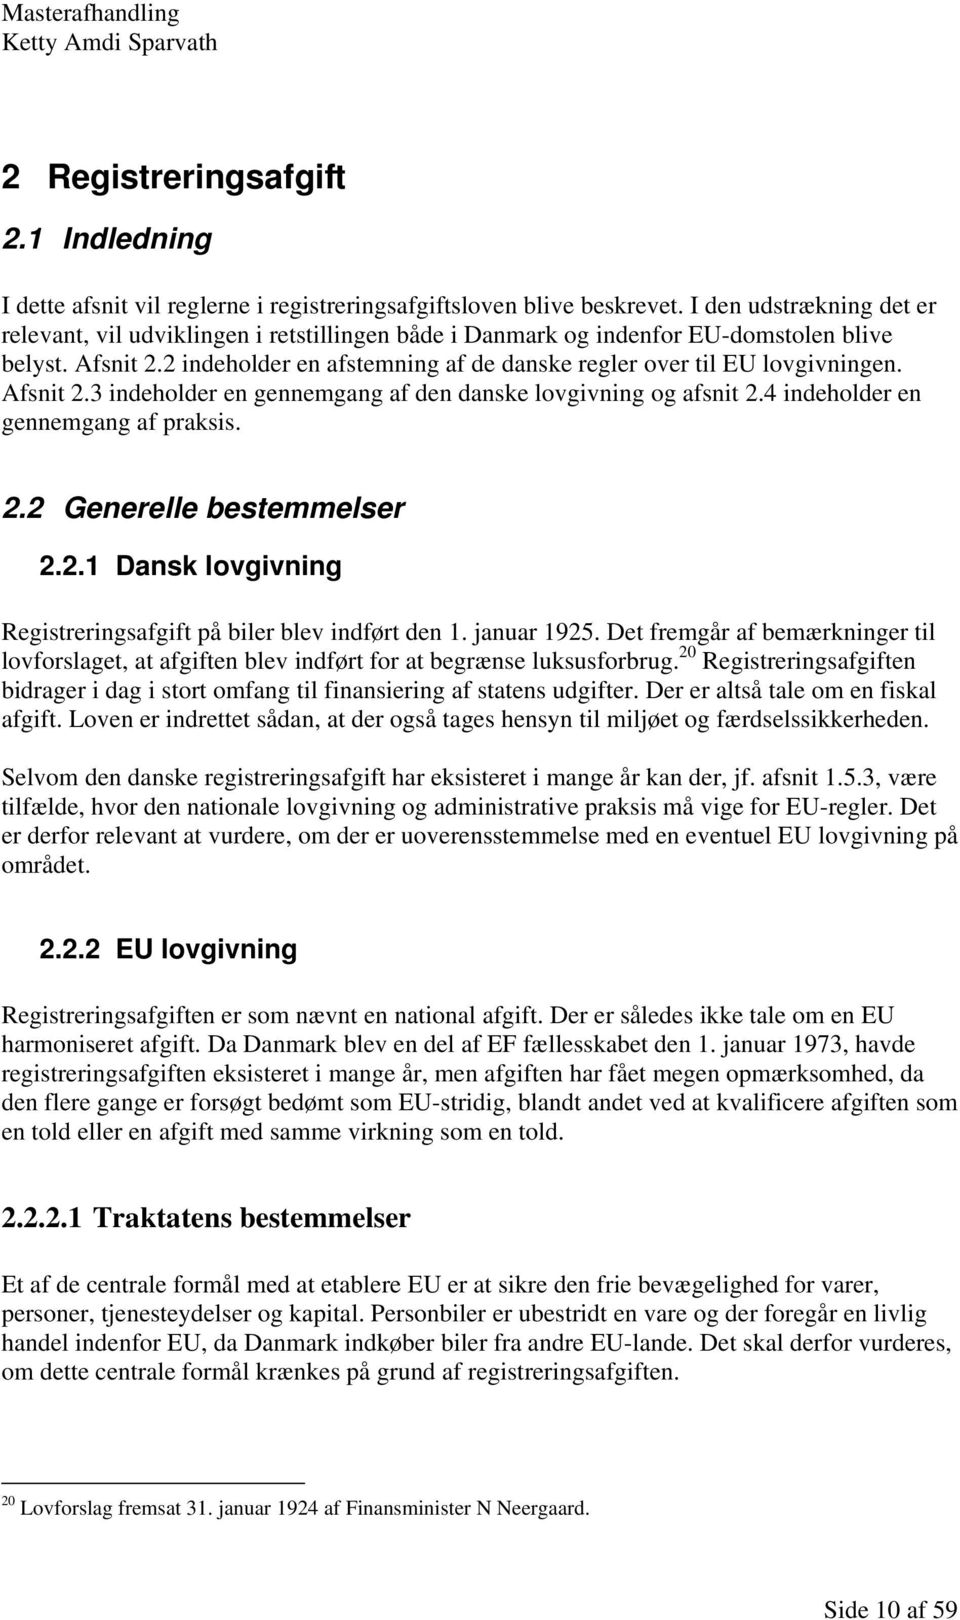 2 indeholder en afstemning af de danske regler over til EU lovgivningen. Afsnit 2.3 indeholder en gennemgang af den danske lovgivning og afsnit 2.4 indeholder en gennemgang af praksis. 2.2 Generelle bestemmelser 2.